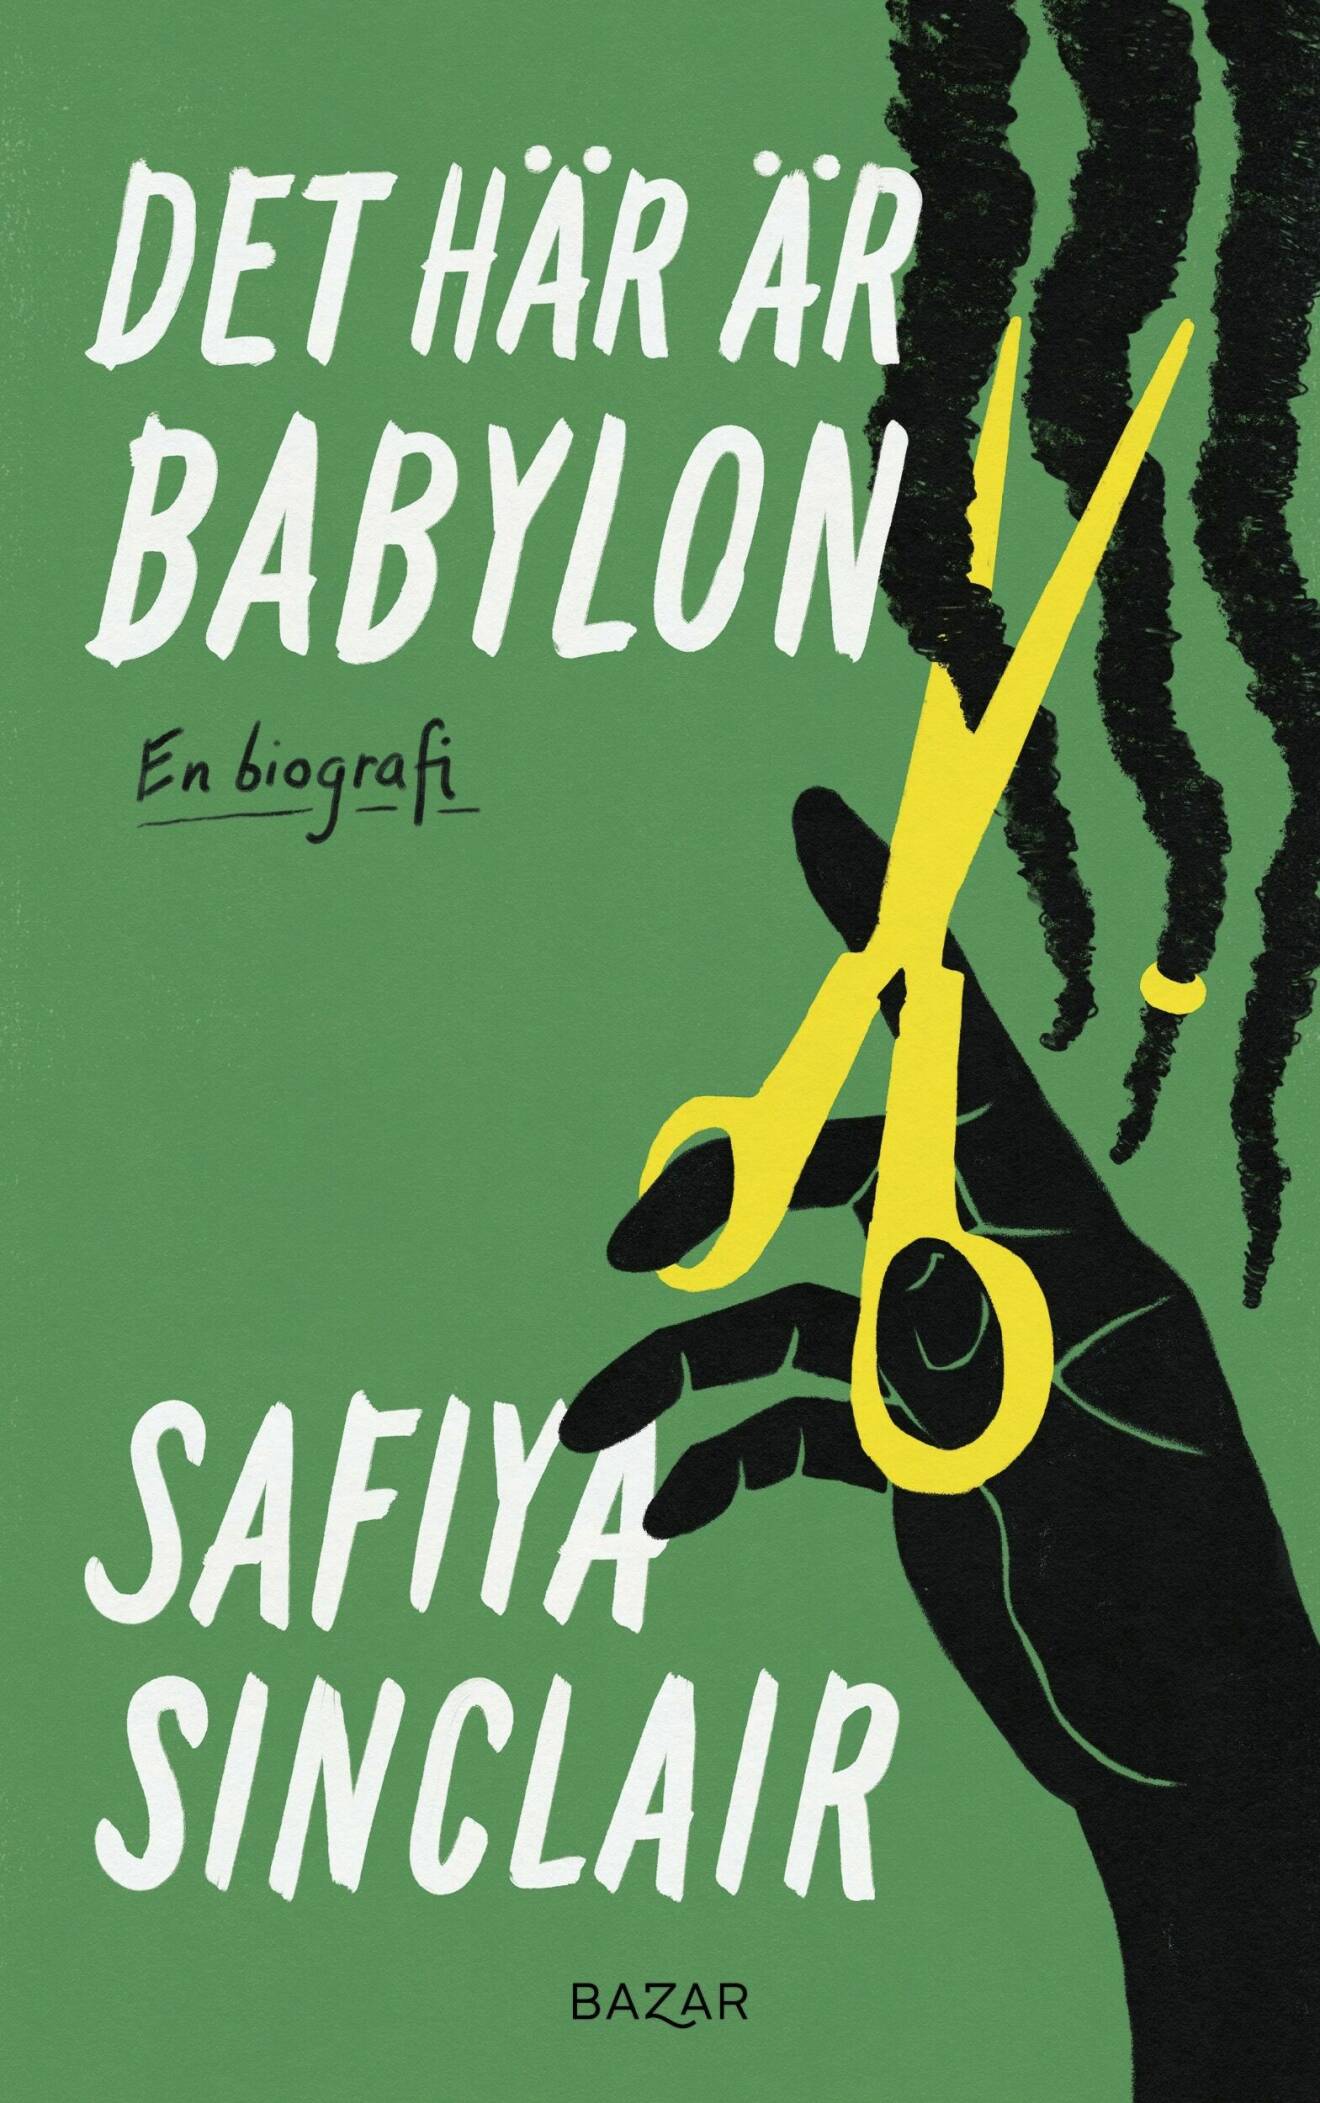 Det här är Babylon av Safiya Sinclair (Bazar).